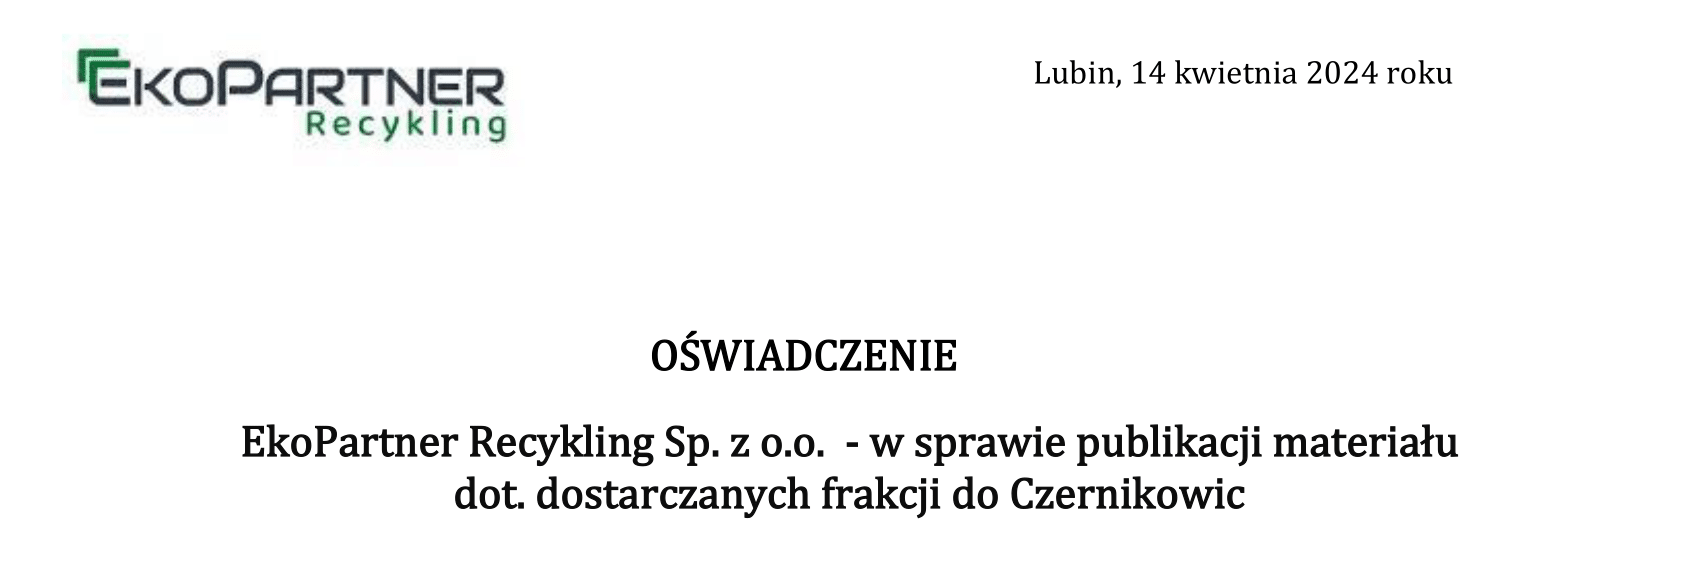 Oświadczenie EkoPartner Recykling Sp. z o.o. - w sprawie publikacji materiału dot. dostarczanych frakcji do Czernikowic